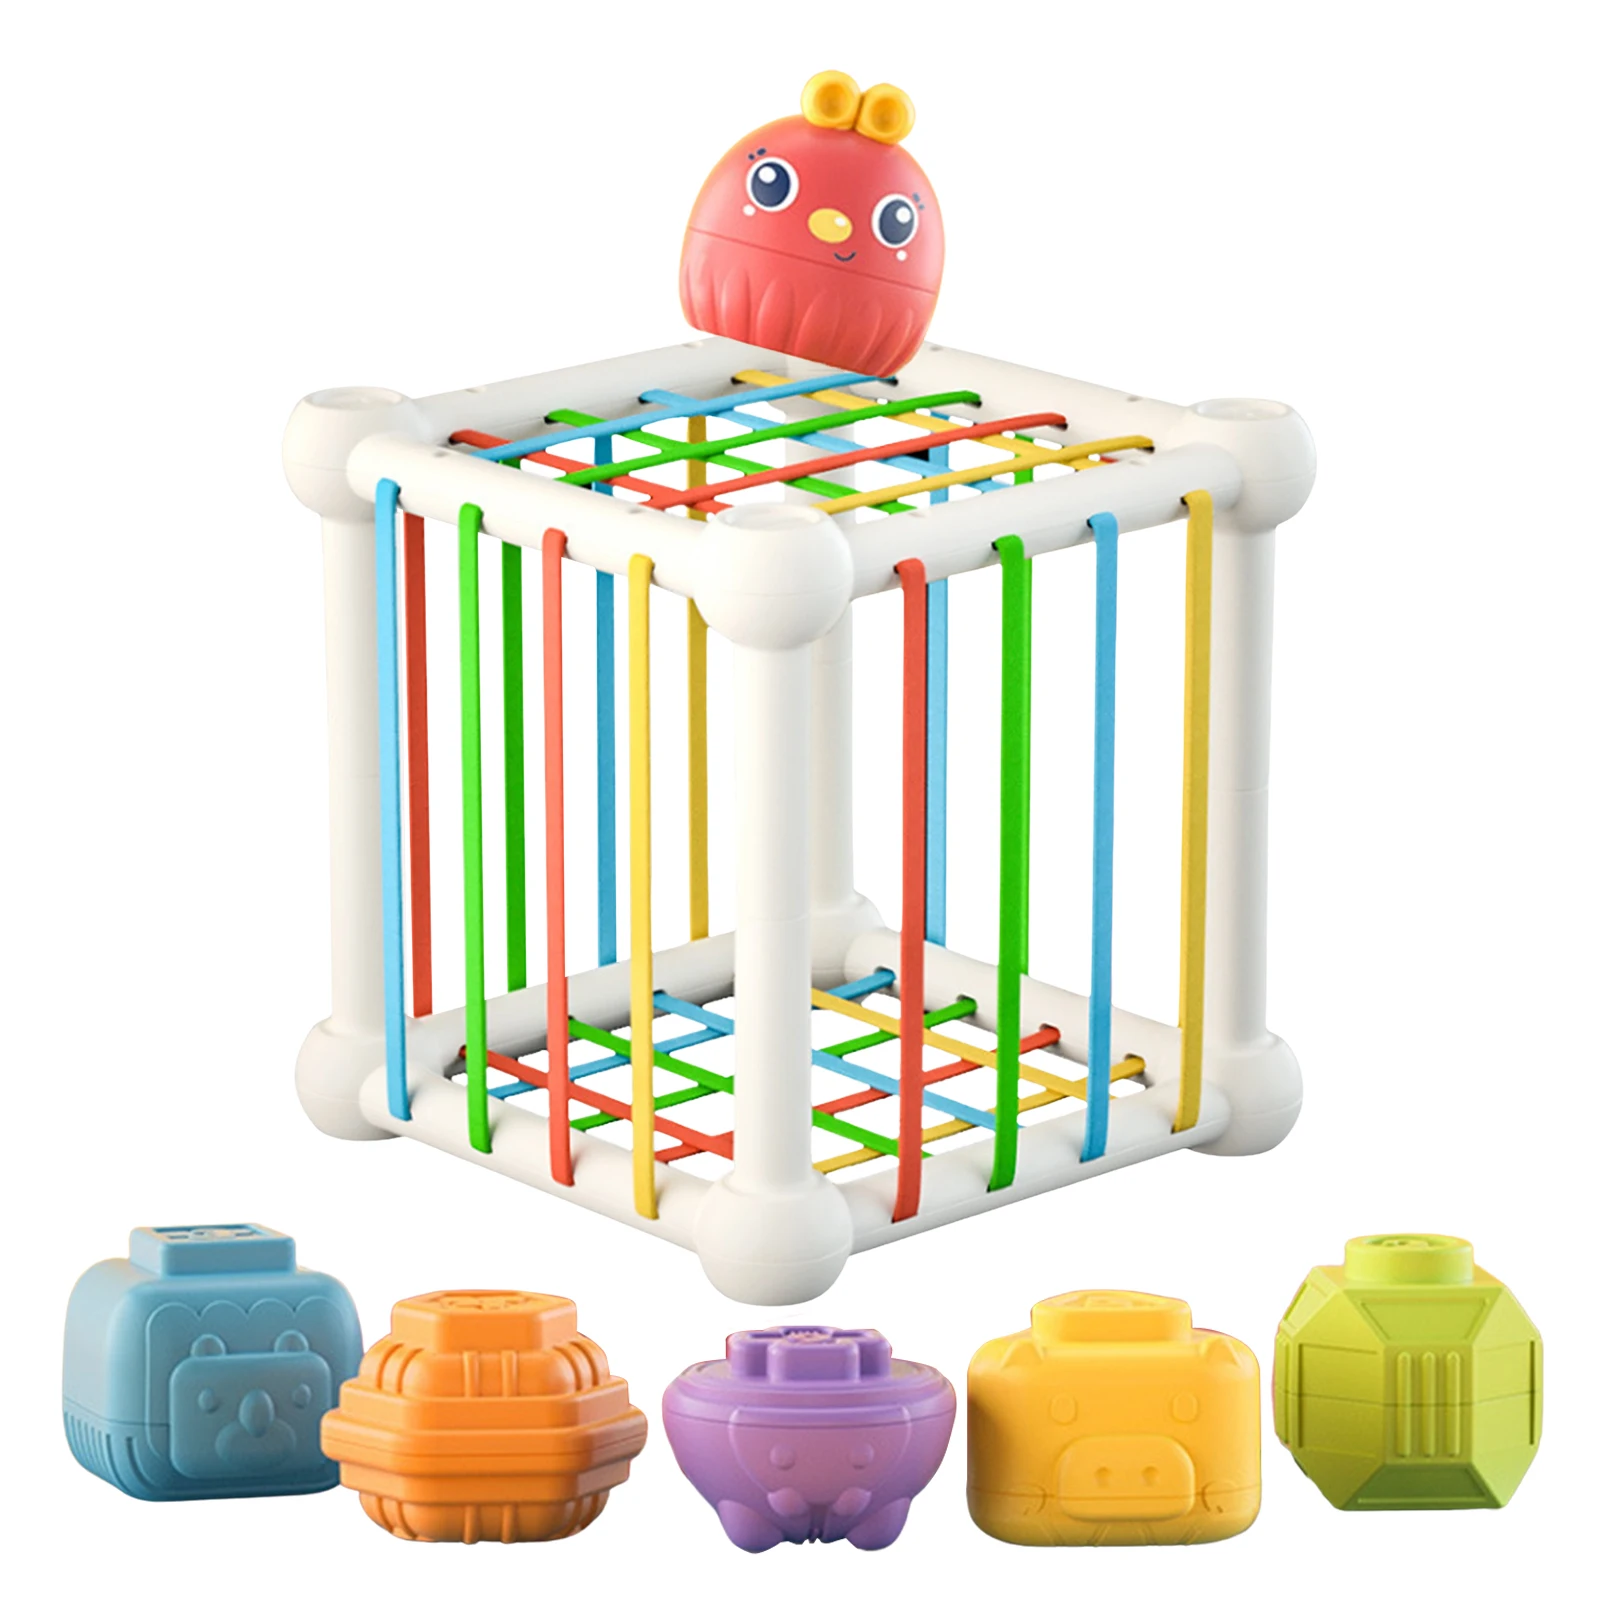 

Сортировочные игрушки в форме ребенка, цветные текстурированные сортировочные игры, развивающие игрушки для детей раннего развития, для ма...